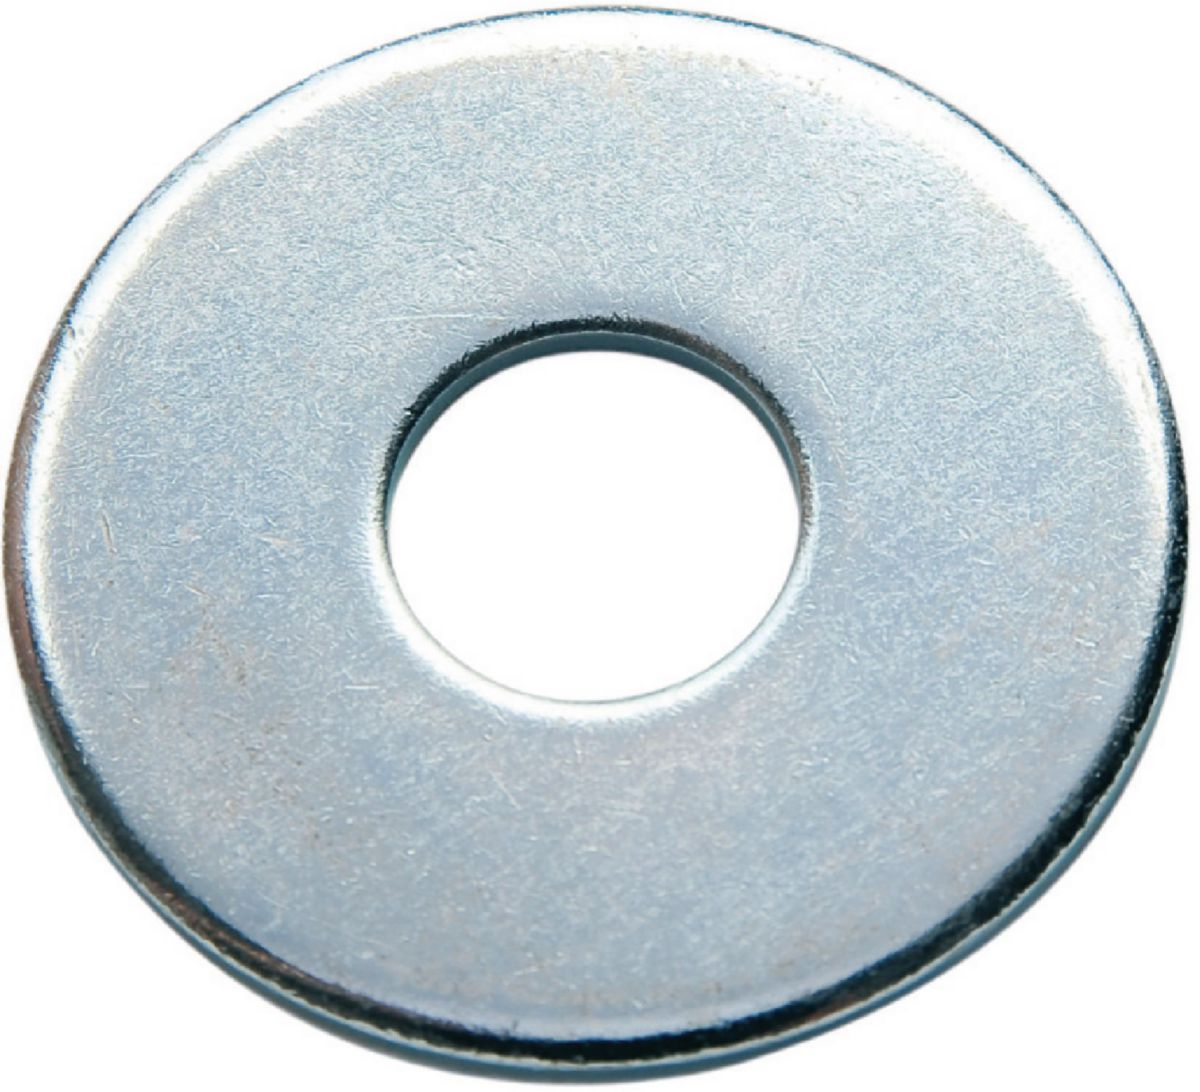 rondelle-plate-large-acier-zingue-d20-30-vybac-vynex-0